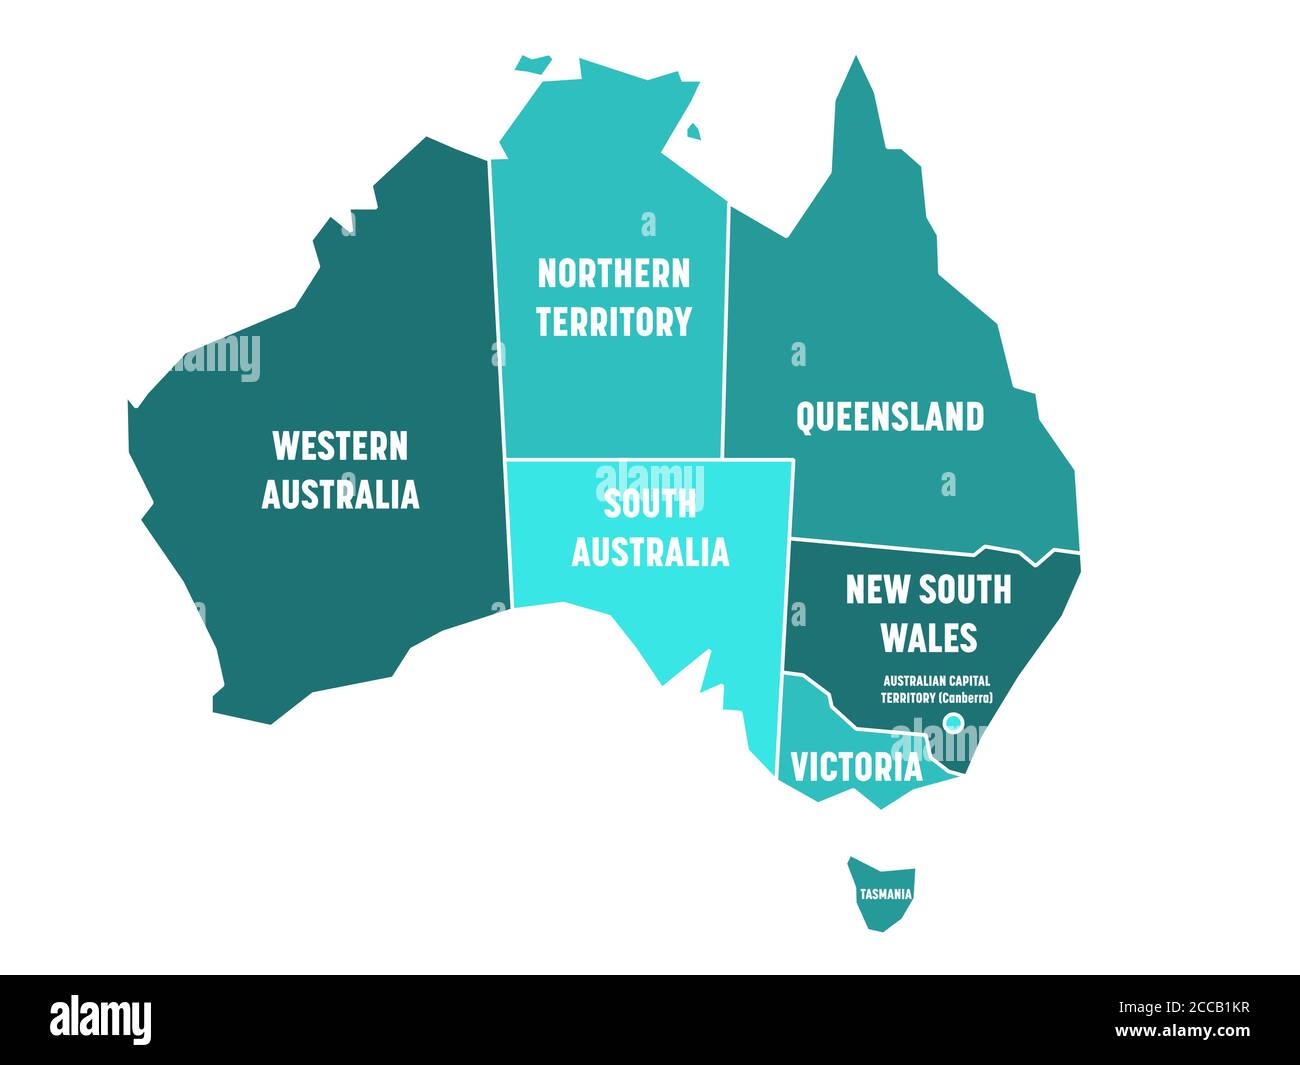 Vereinfachte Karte von Australien unterteilt in Staaten und Territorien. Türkisblaue flache Karte mit weißen Rändern und weißen Etiketten. Vektorgrafik. Stock Vektor